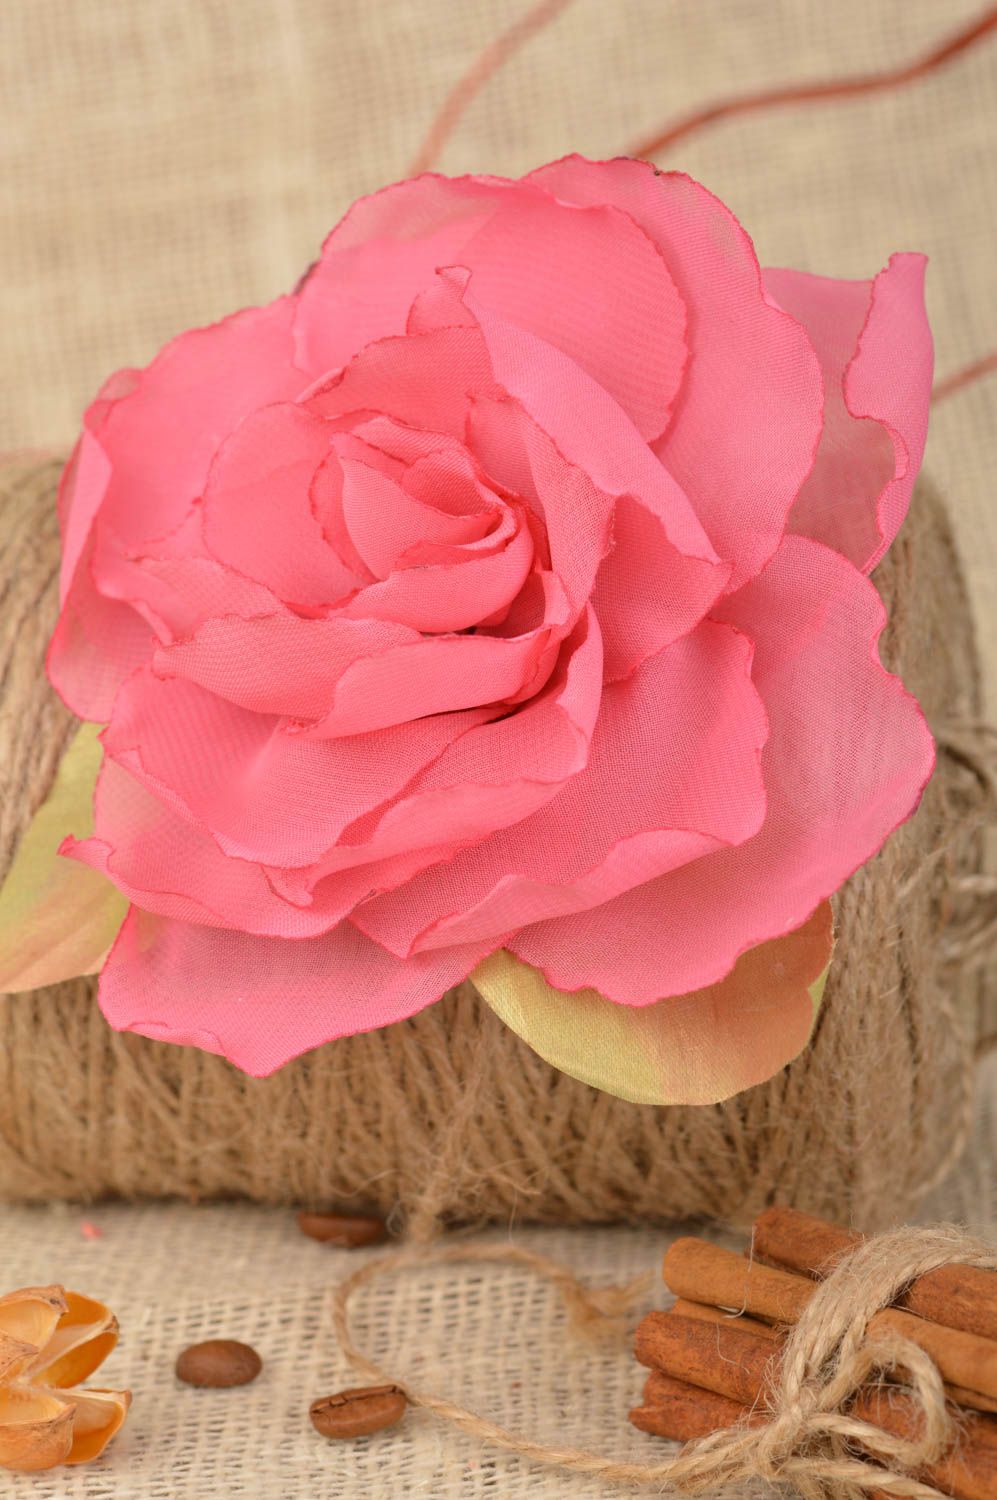 Брошь заколка в виде цветка пиона пышная розовая красивая нарядная ручной работы фото 1